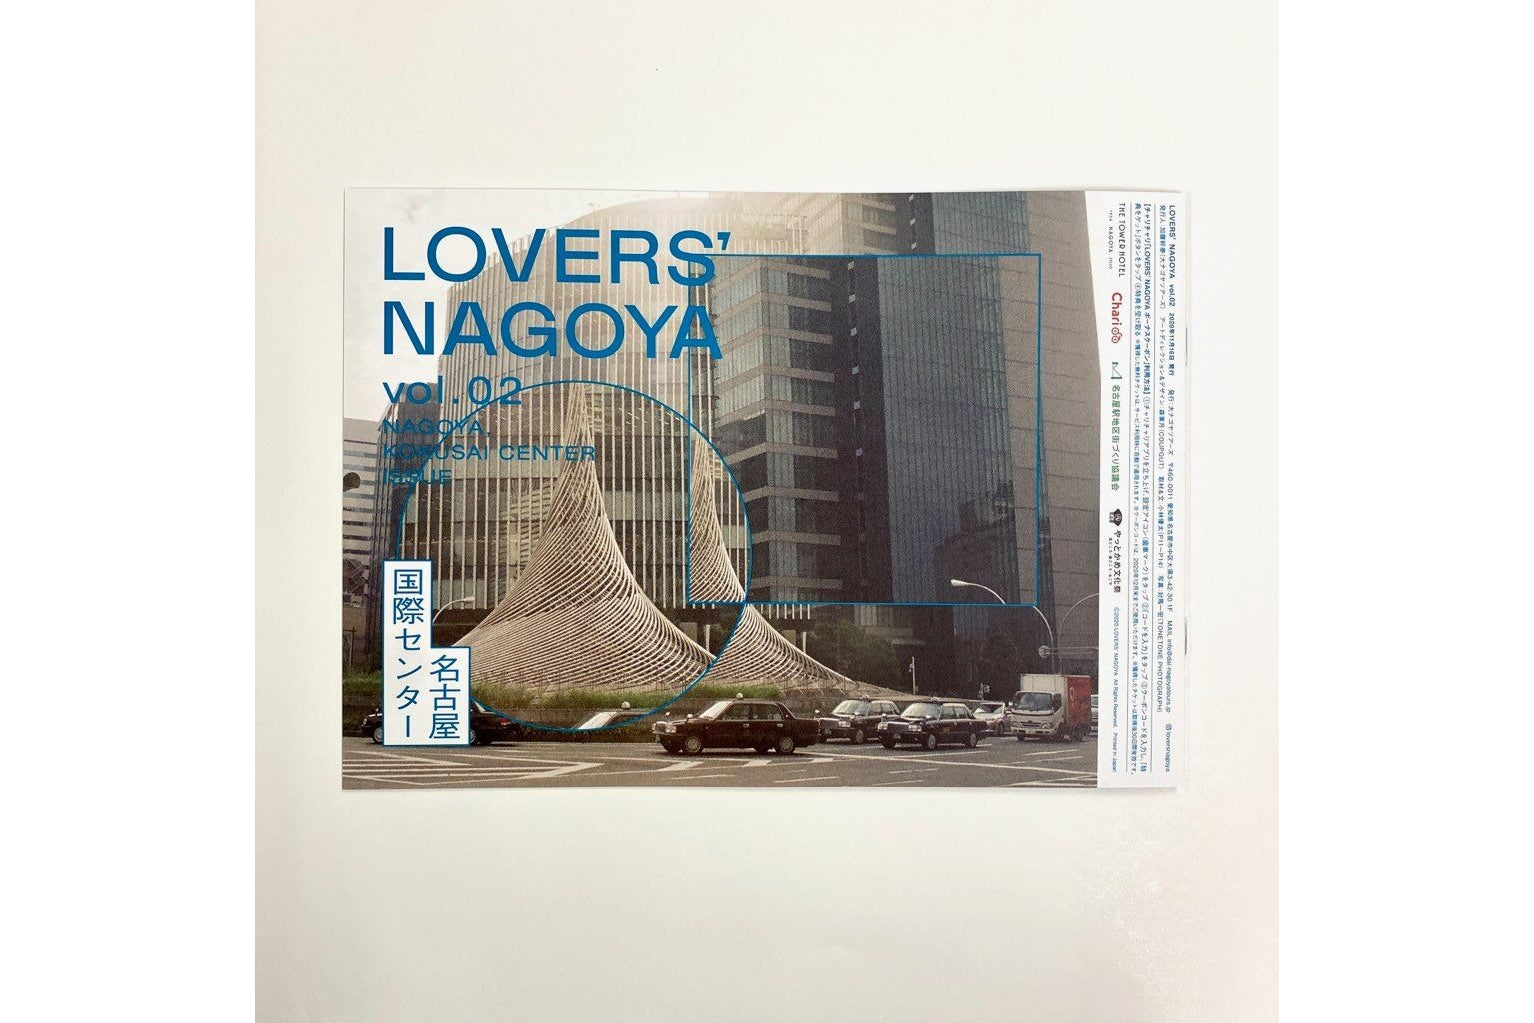 LOVER'S NAGOYA Vol.2